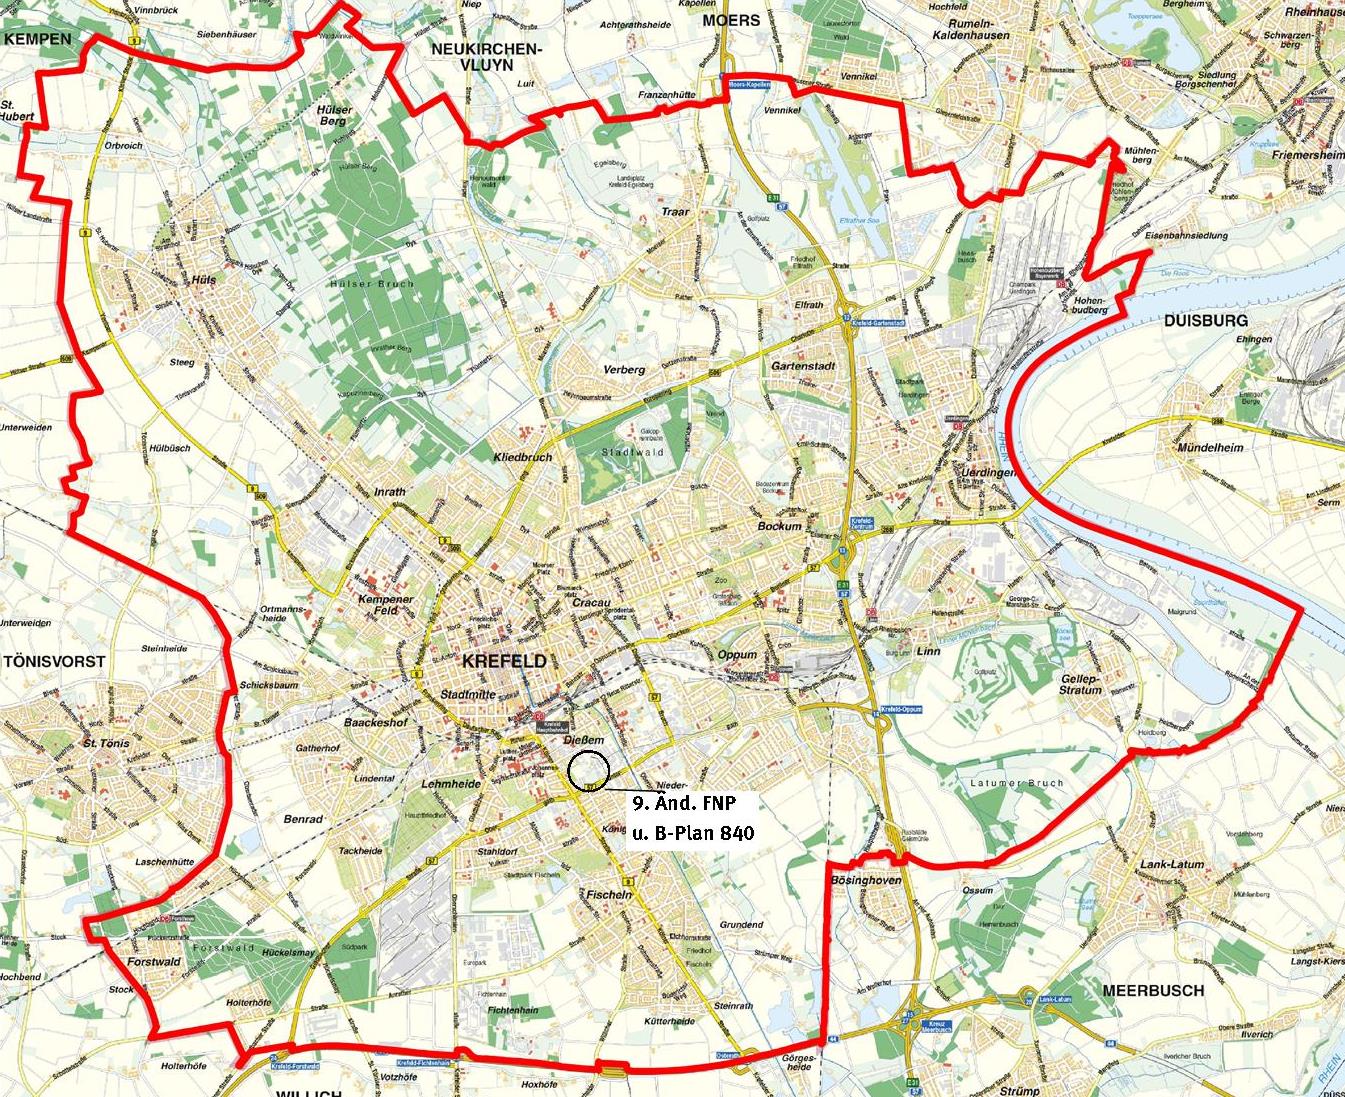 Bebauungsplan 840 und 9. Änderung des Flächennutzungsplanes in der Stadtkarte